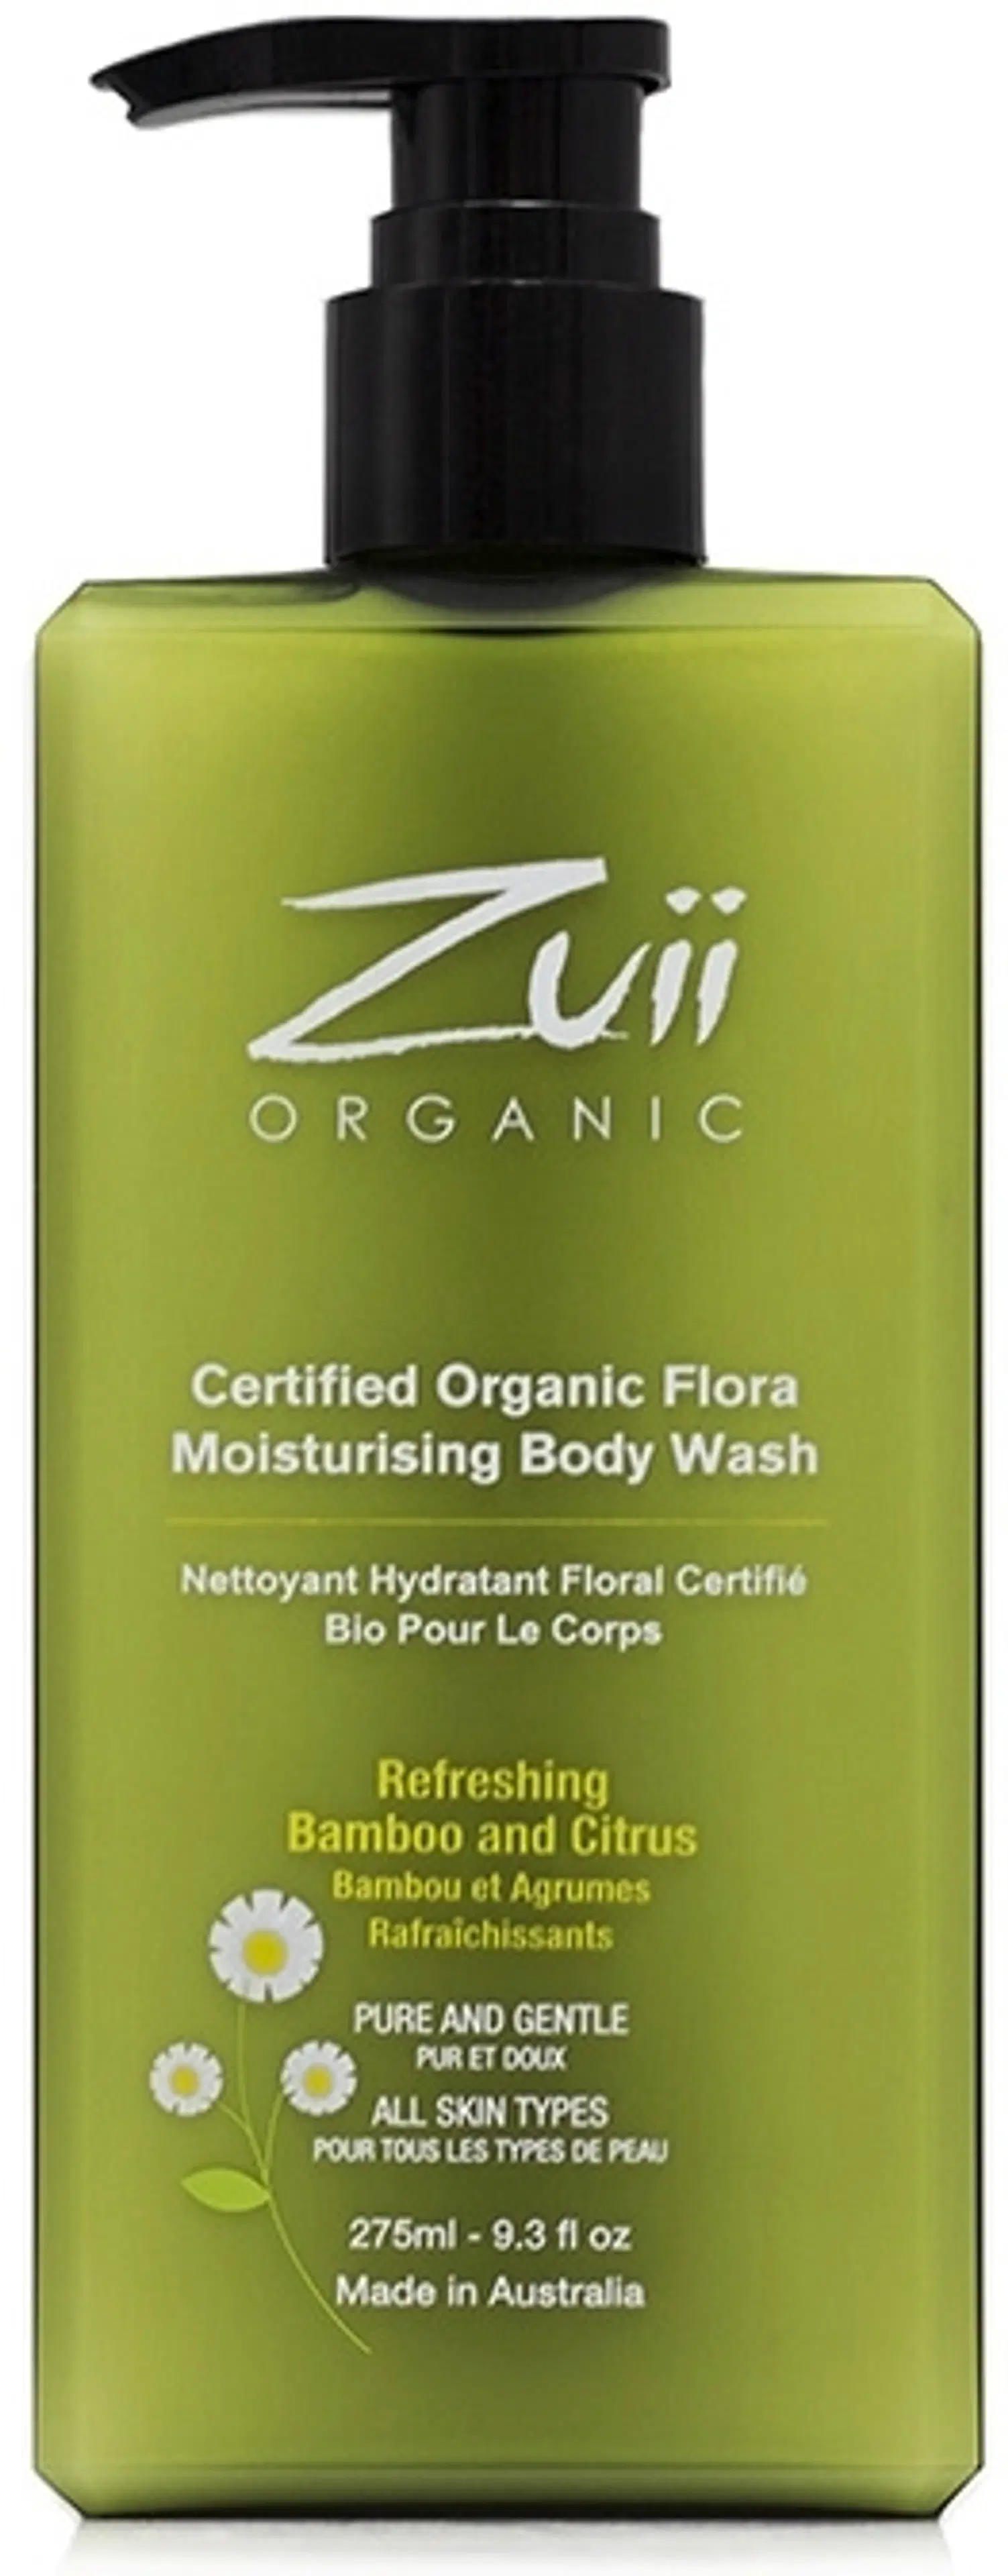 Zuii Organic Flora Moisturising Body Wash kosteuttava suihkugeeli 275ml